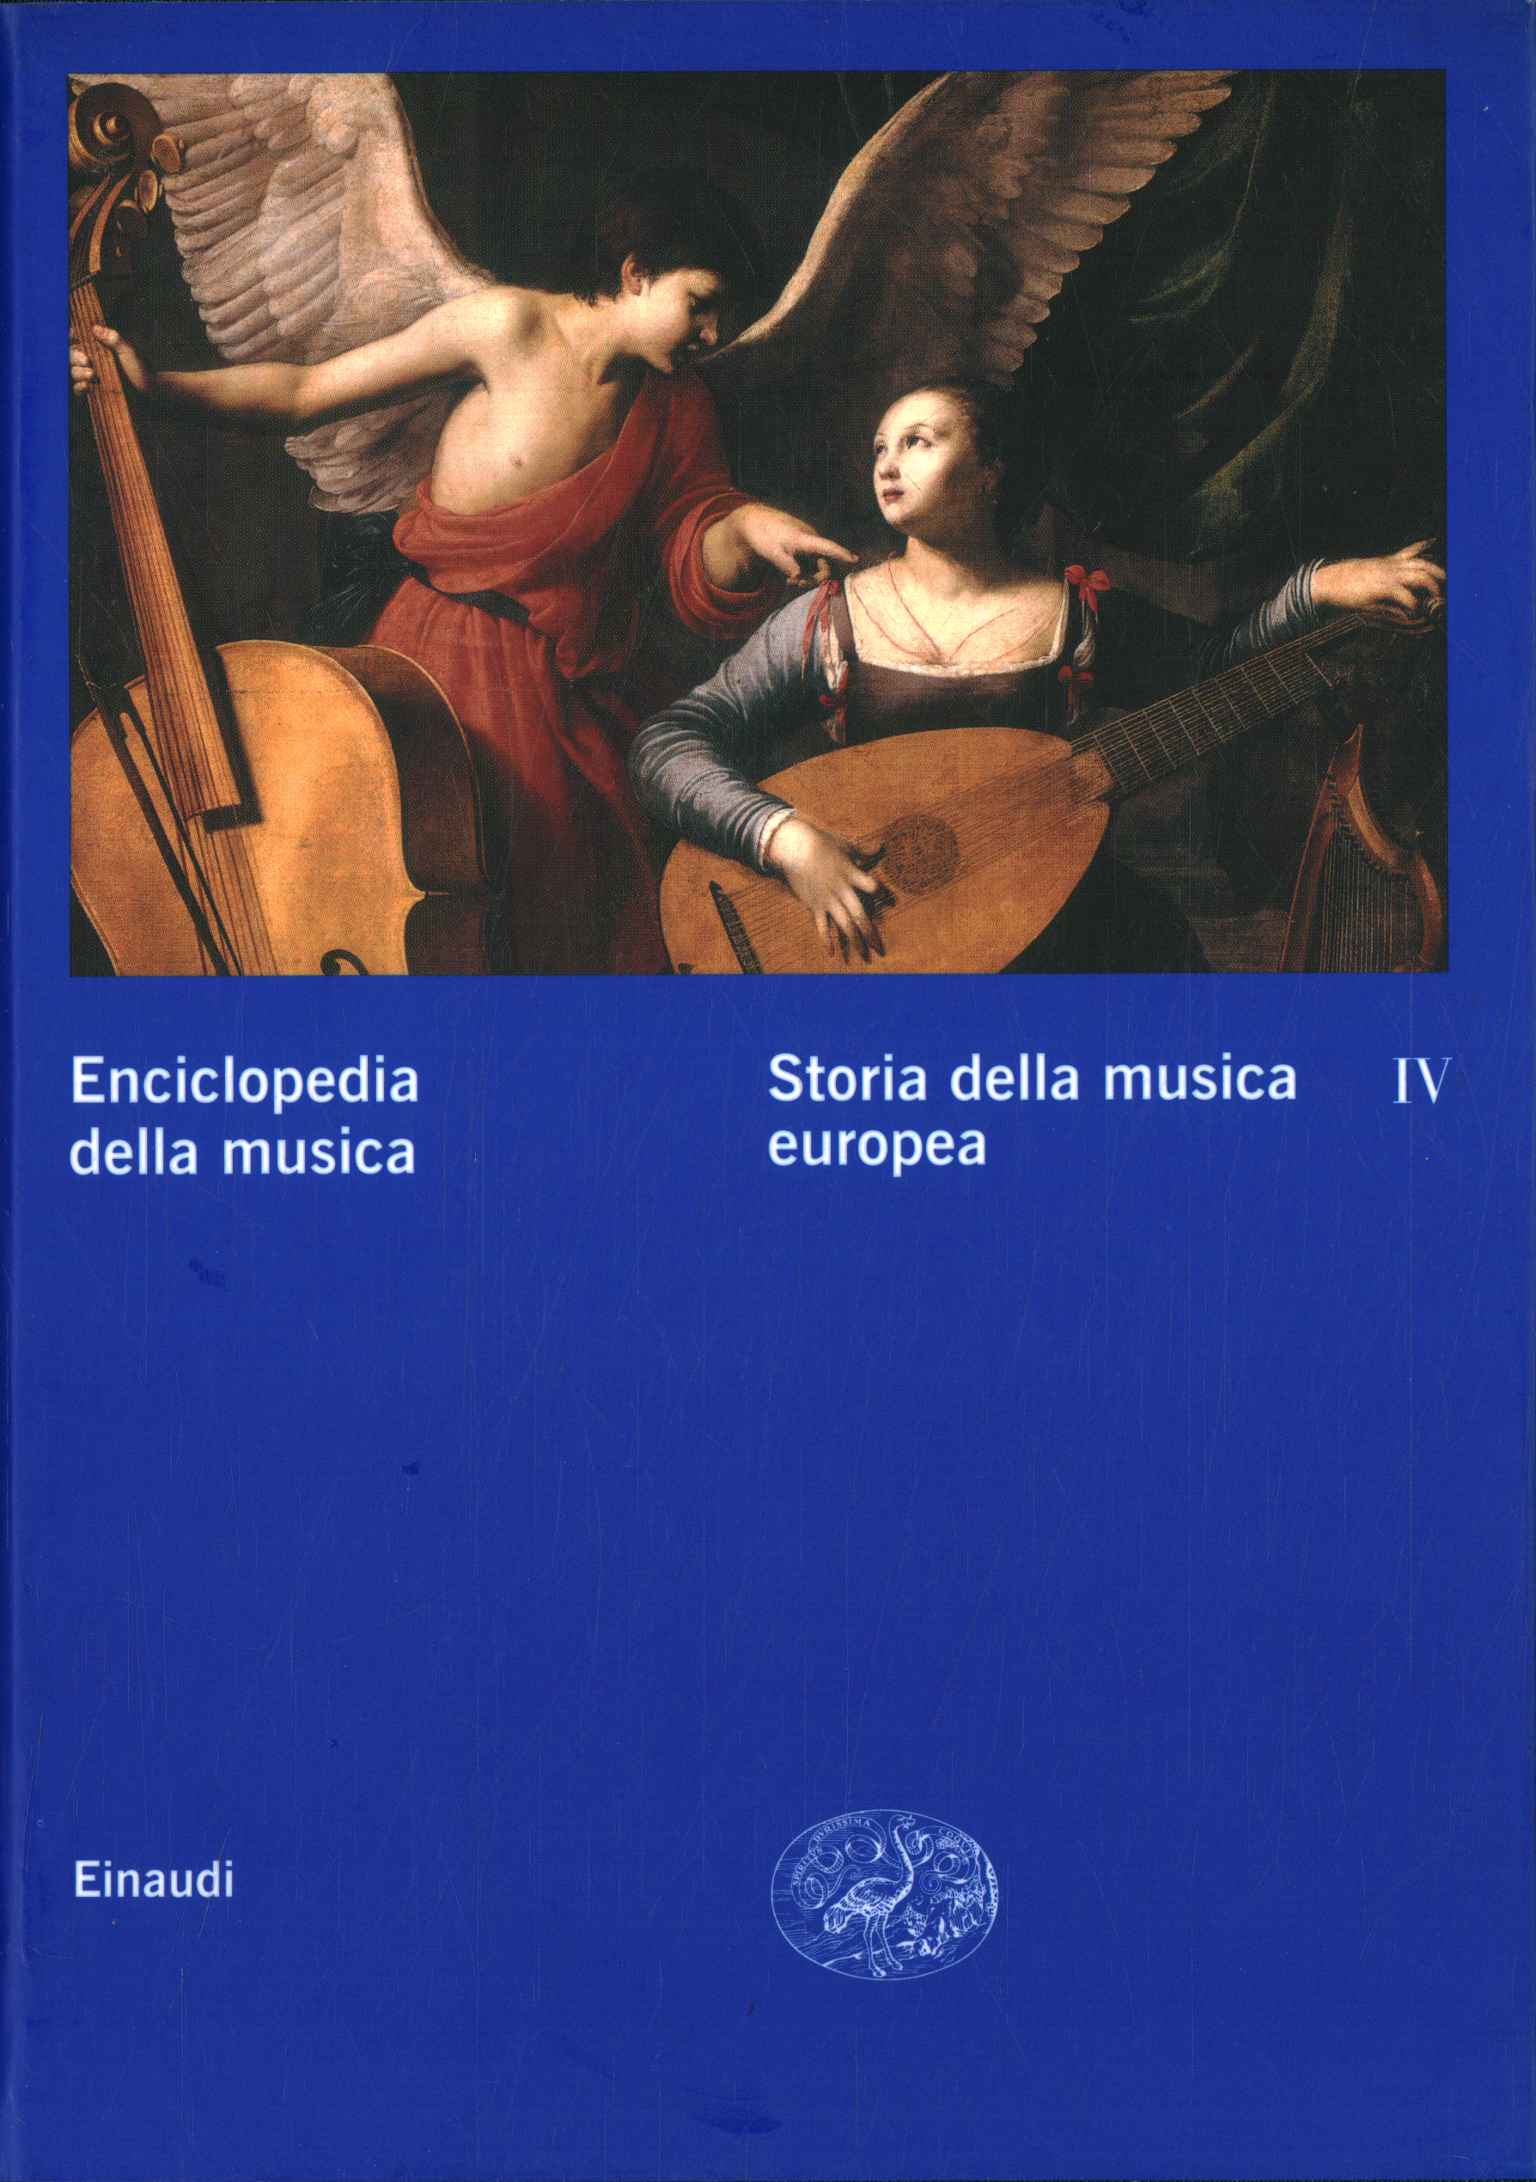 Encyclopédie de la musique. L'histoire de